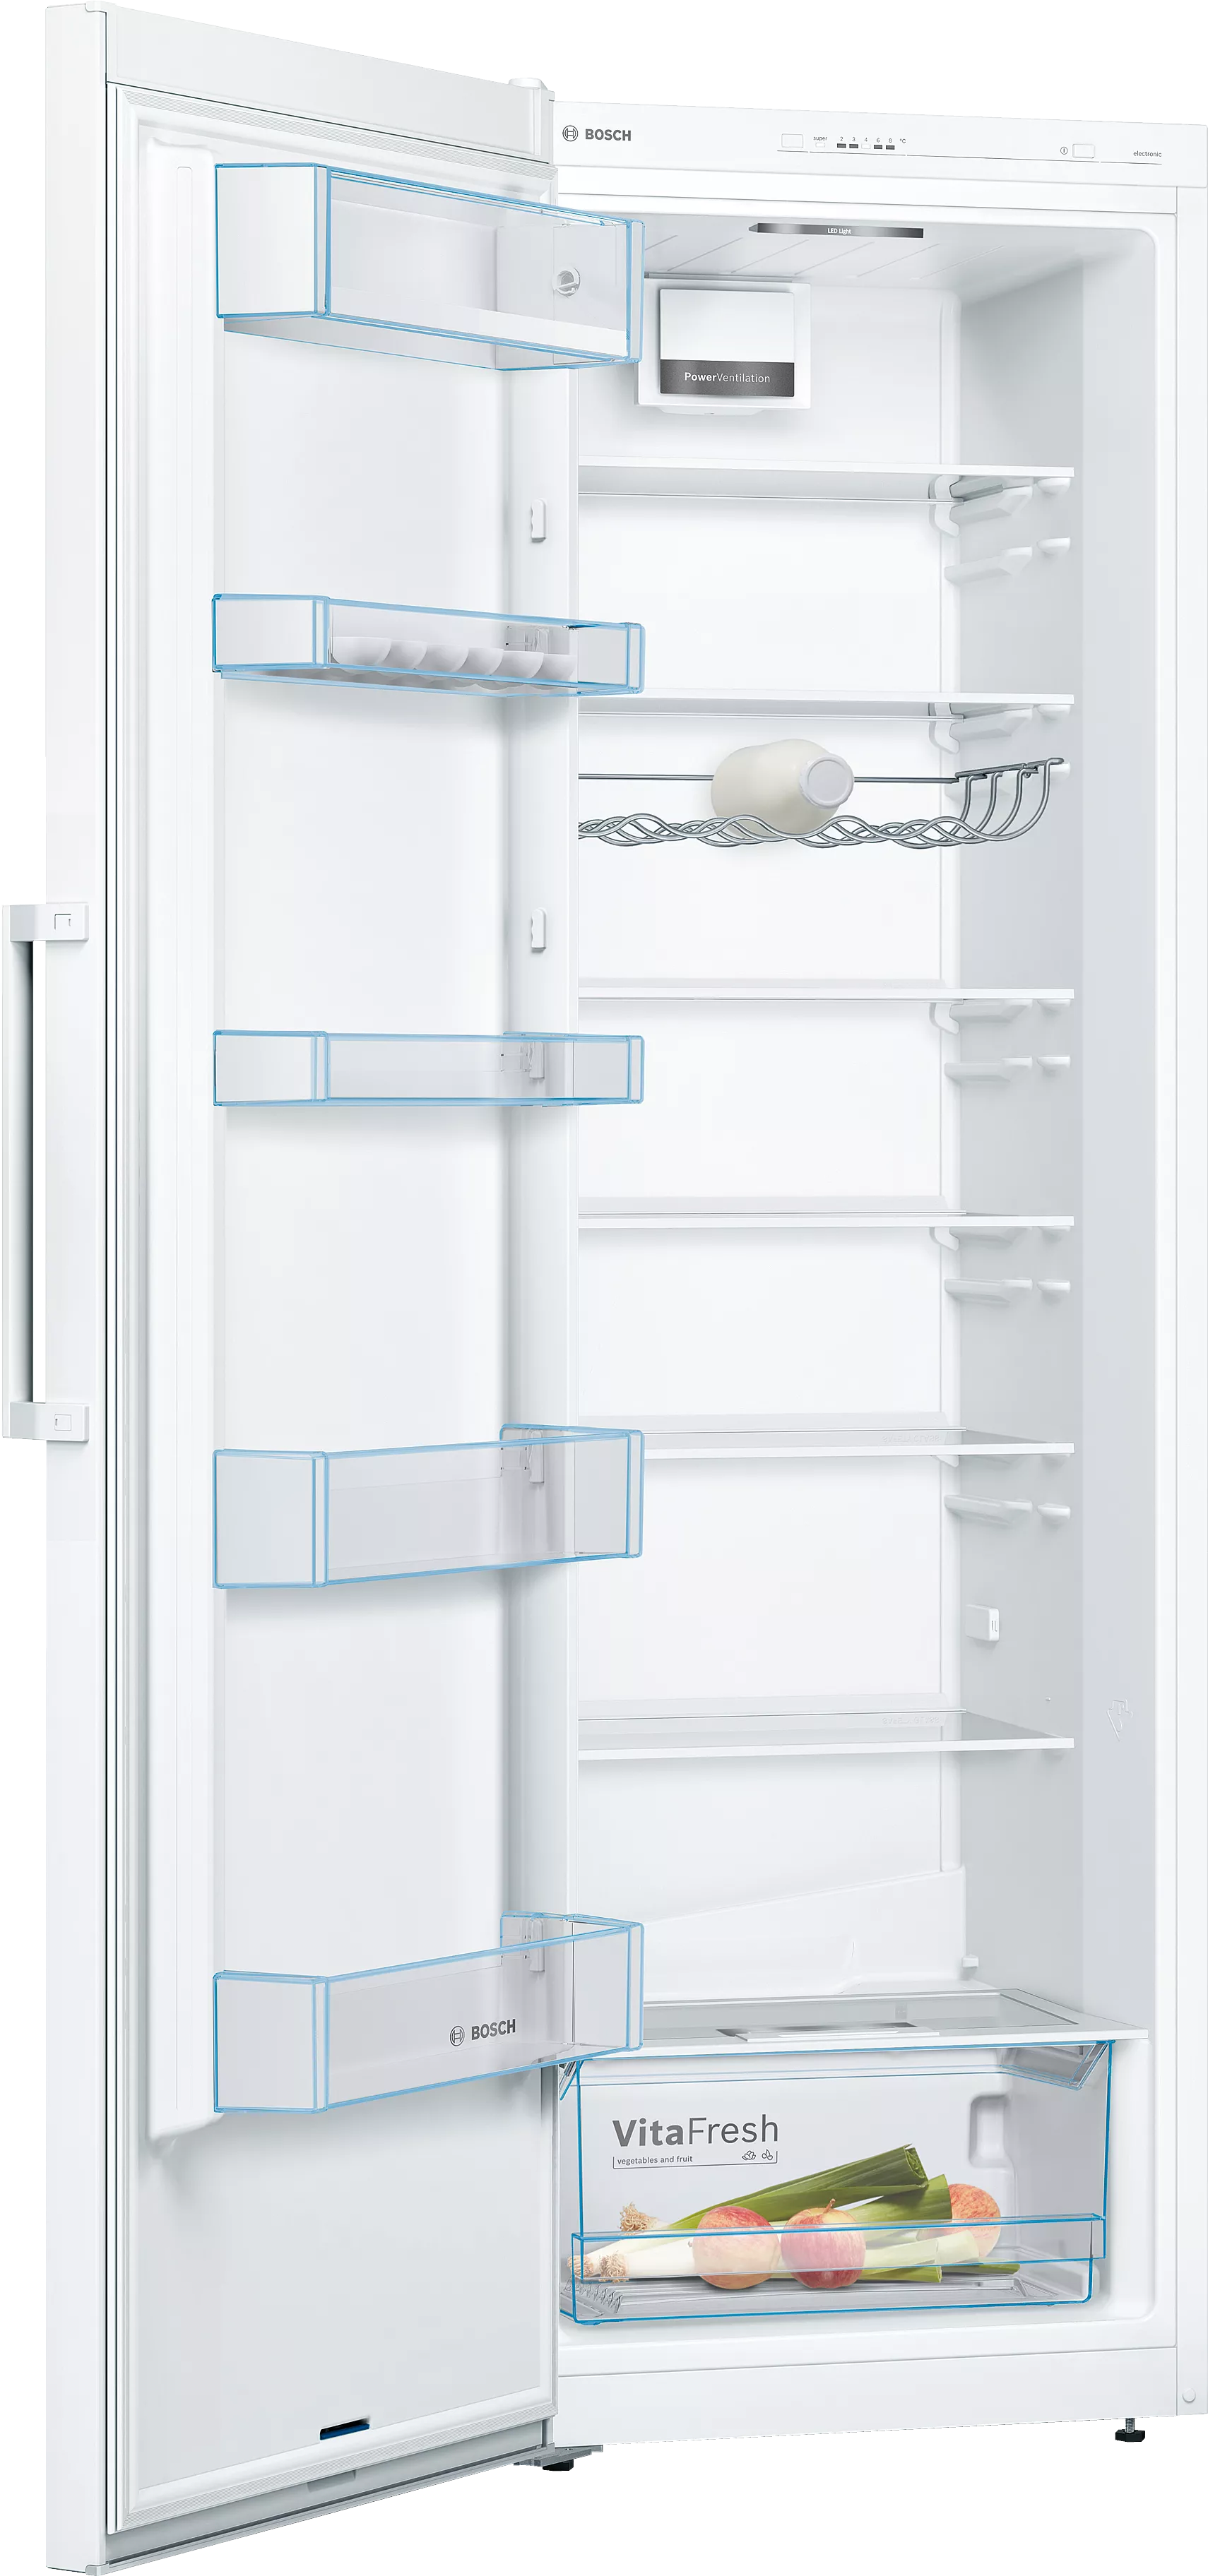 Bosch Serie 4, Freistehender Kühlschrank, 186 x 60 cm, Weiß, KSV36VWEP